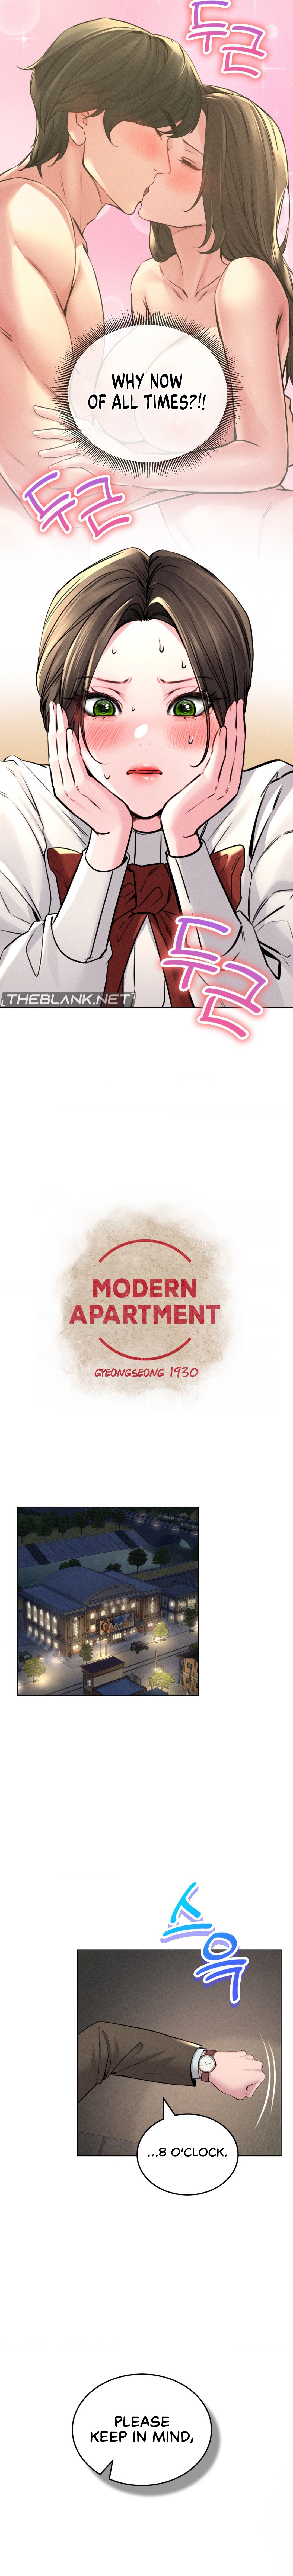 Modern Apartment, Gyeongseong 1930 NEW image